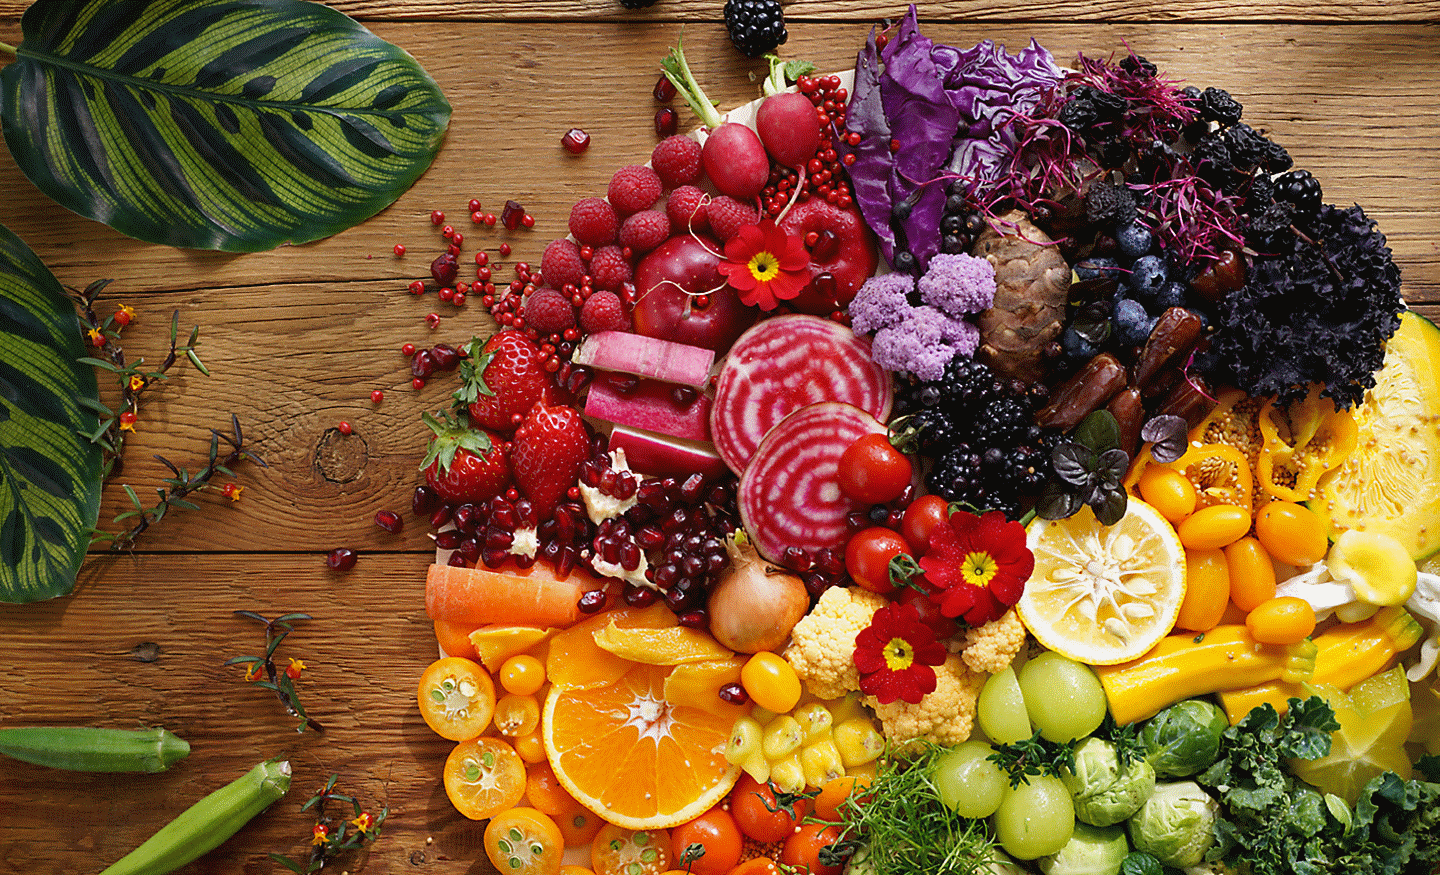 Šiuo fotoaparatu užfiksuotų spalvingų daržovių ir vaisių didelės raiškos visame kadre vaizdas